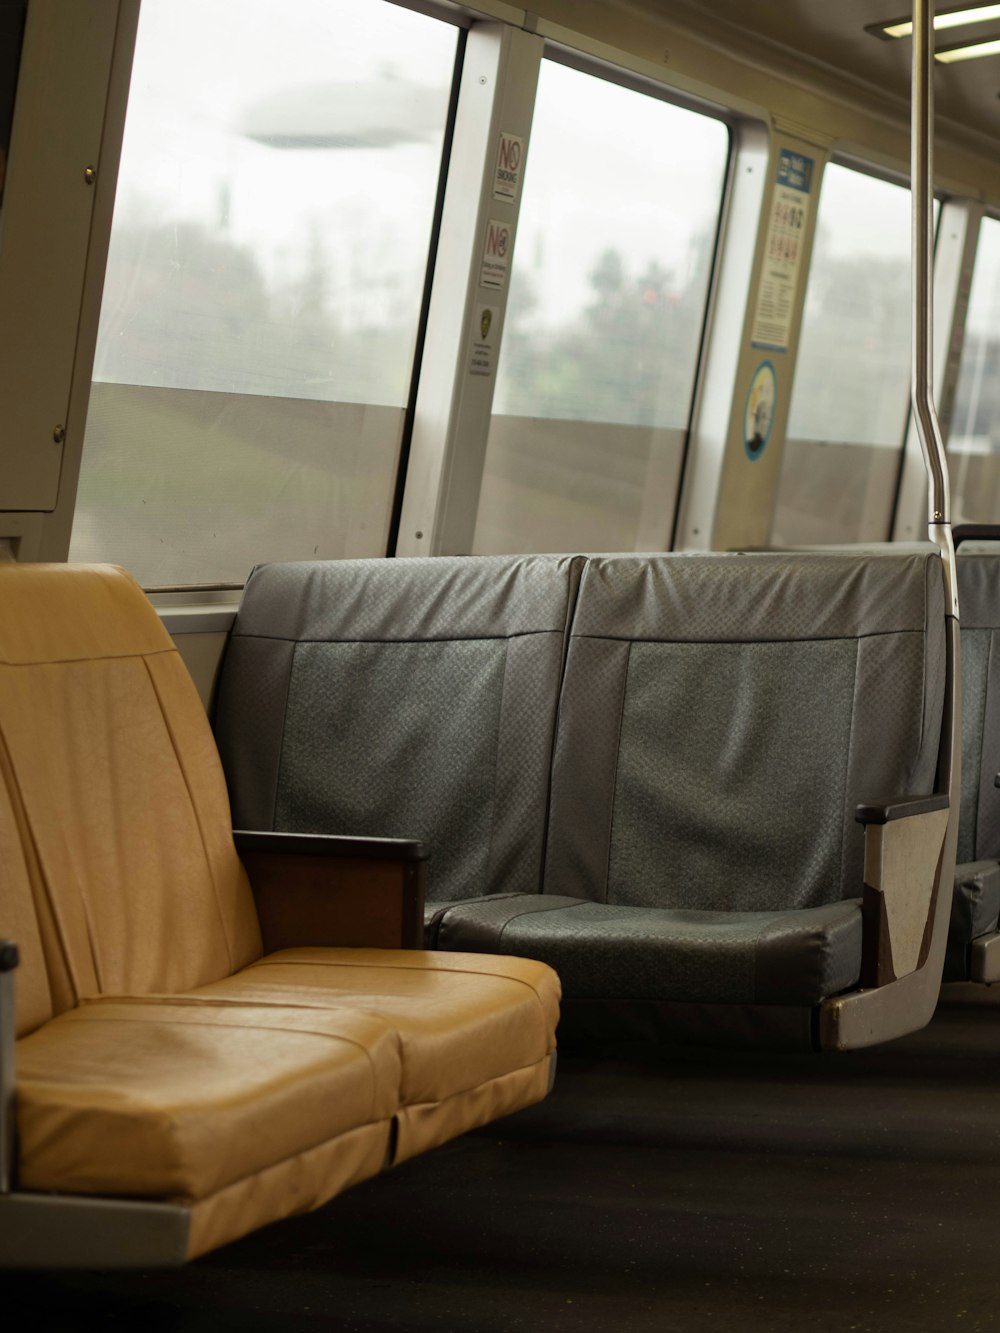 a chair in a train